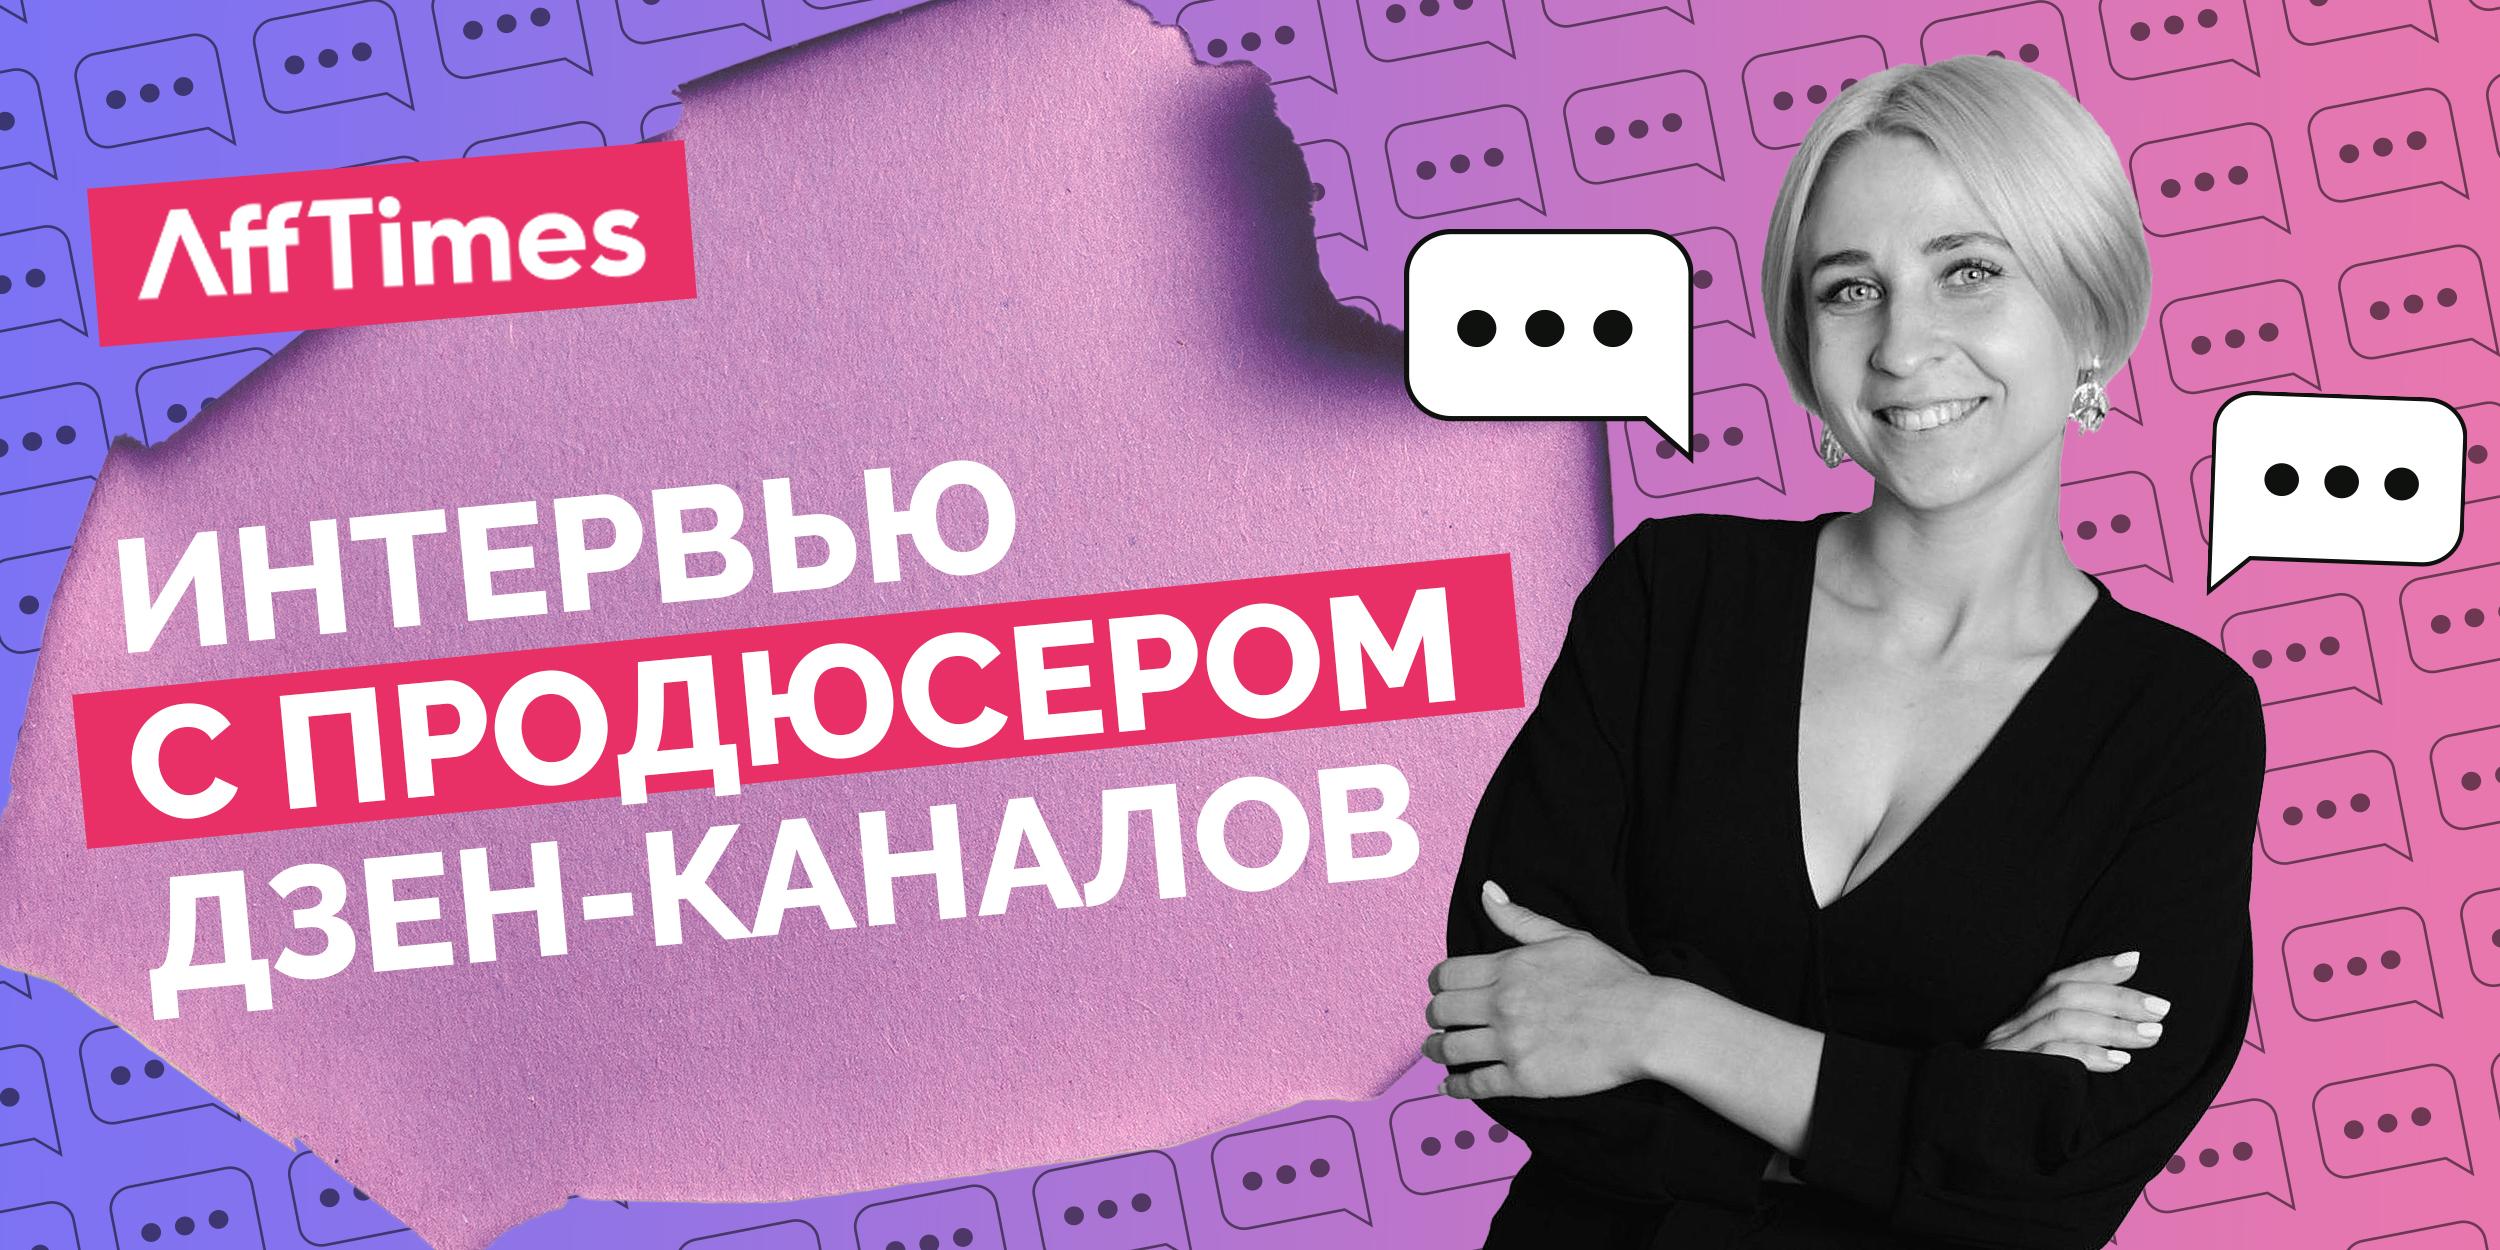 Интервью с продюсером Дзен-каналов: «Сейчас на новостях молодой канал может зарабатывать 100 000 рублей в месяц»